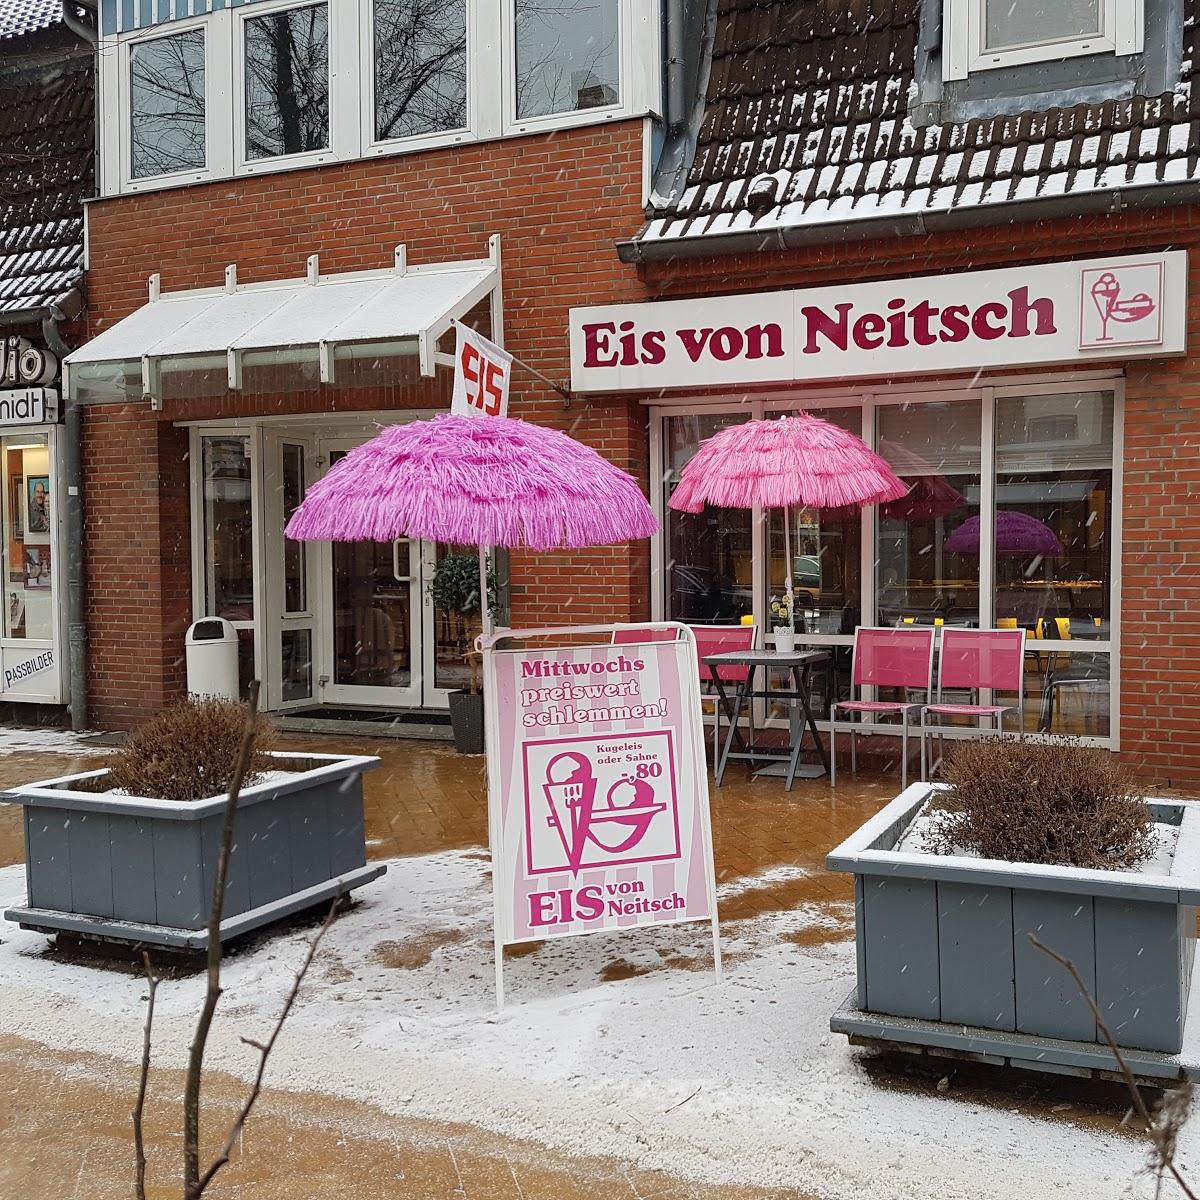 Restaurant "Eis von Neitsch" in Kiel